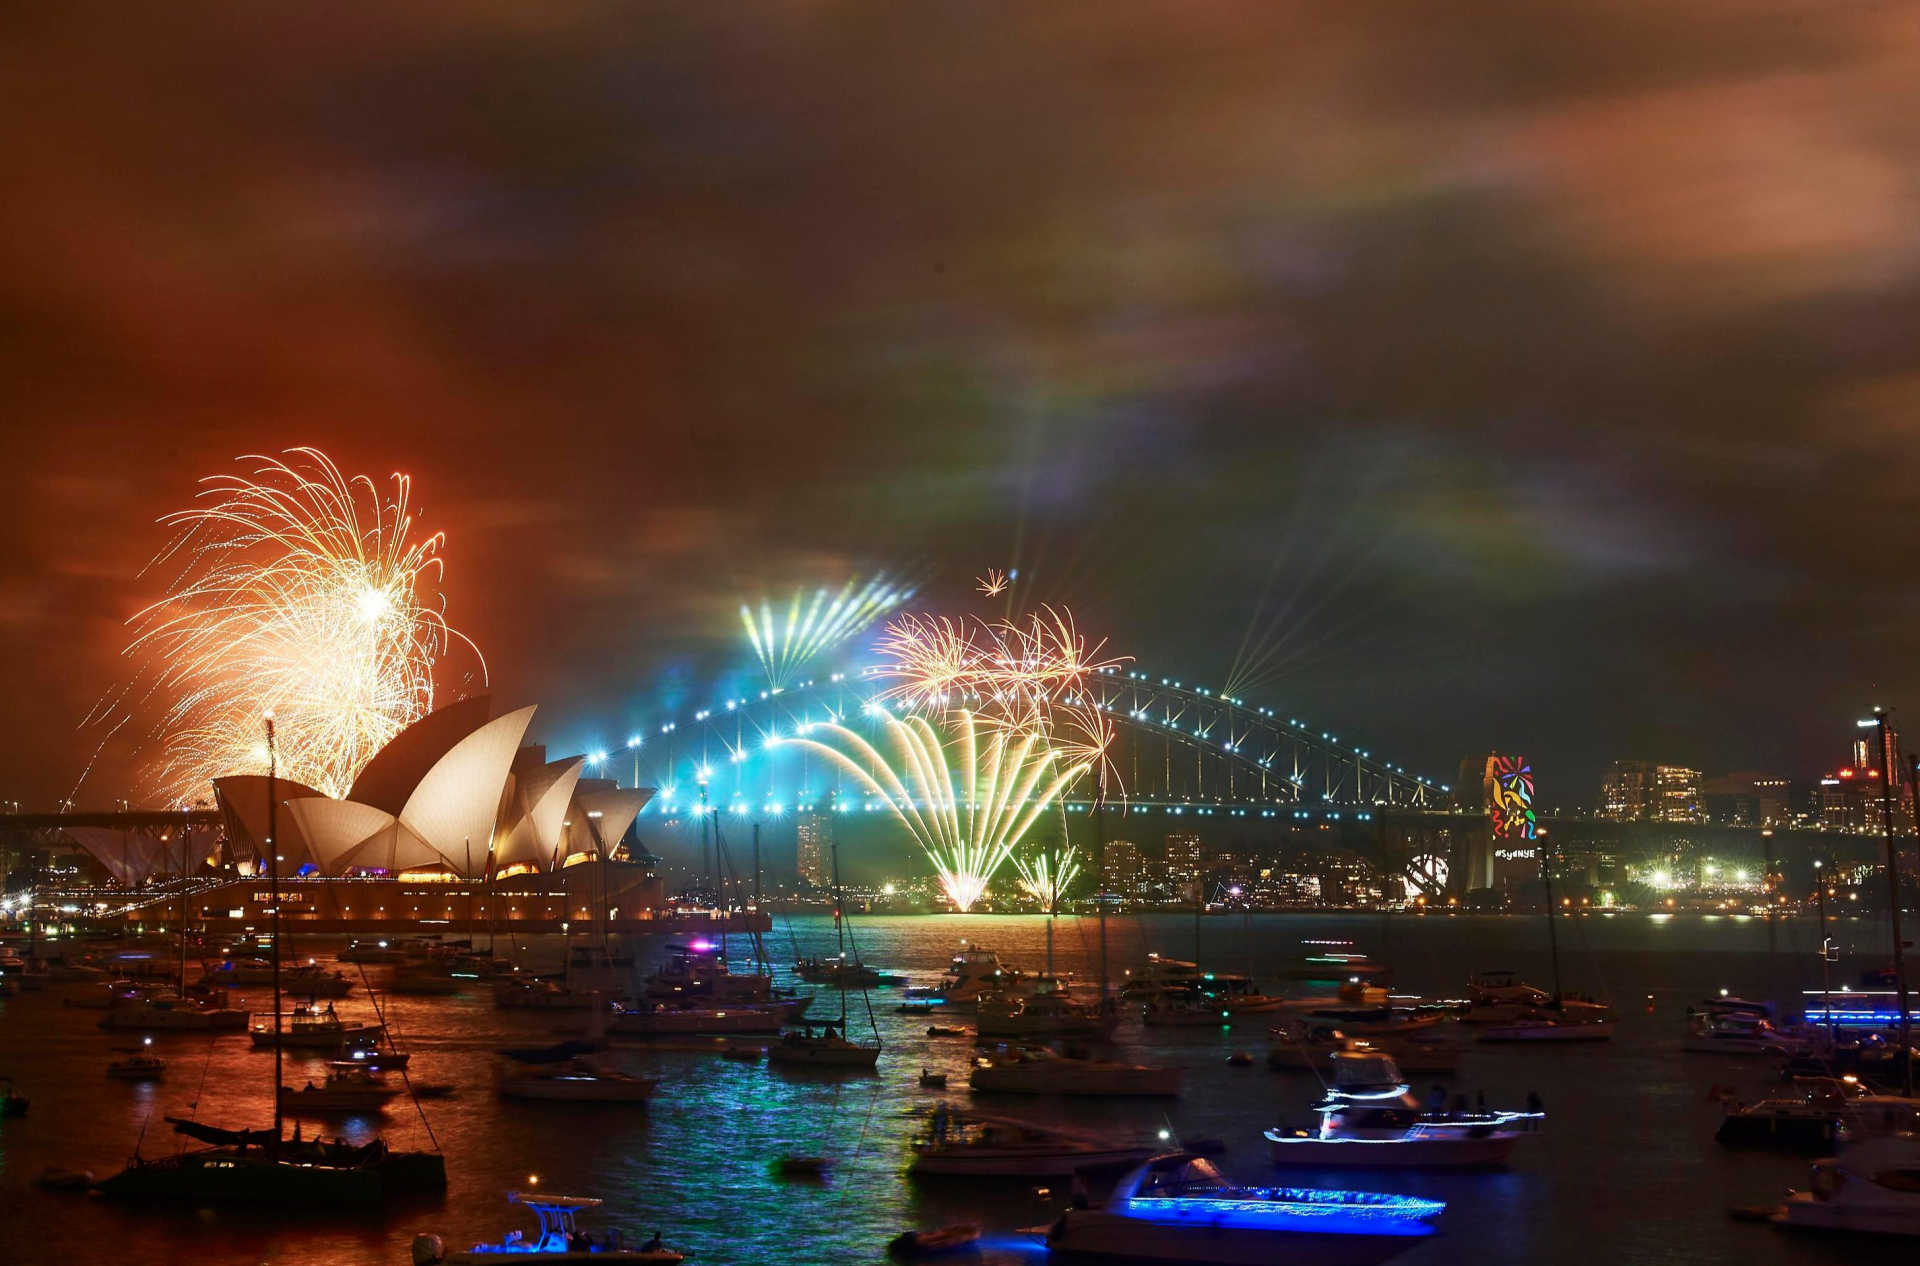 Ước tính có hơn 1 triệu người tham gia chào đón năm mới ở Cầu cảng Sydney